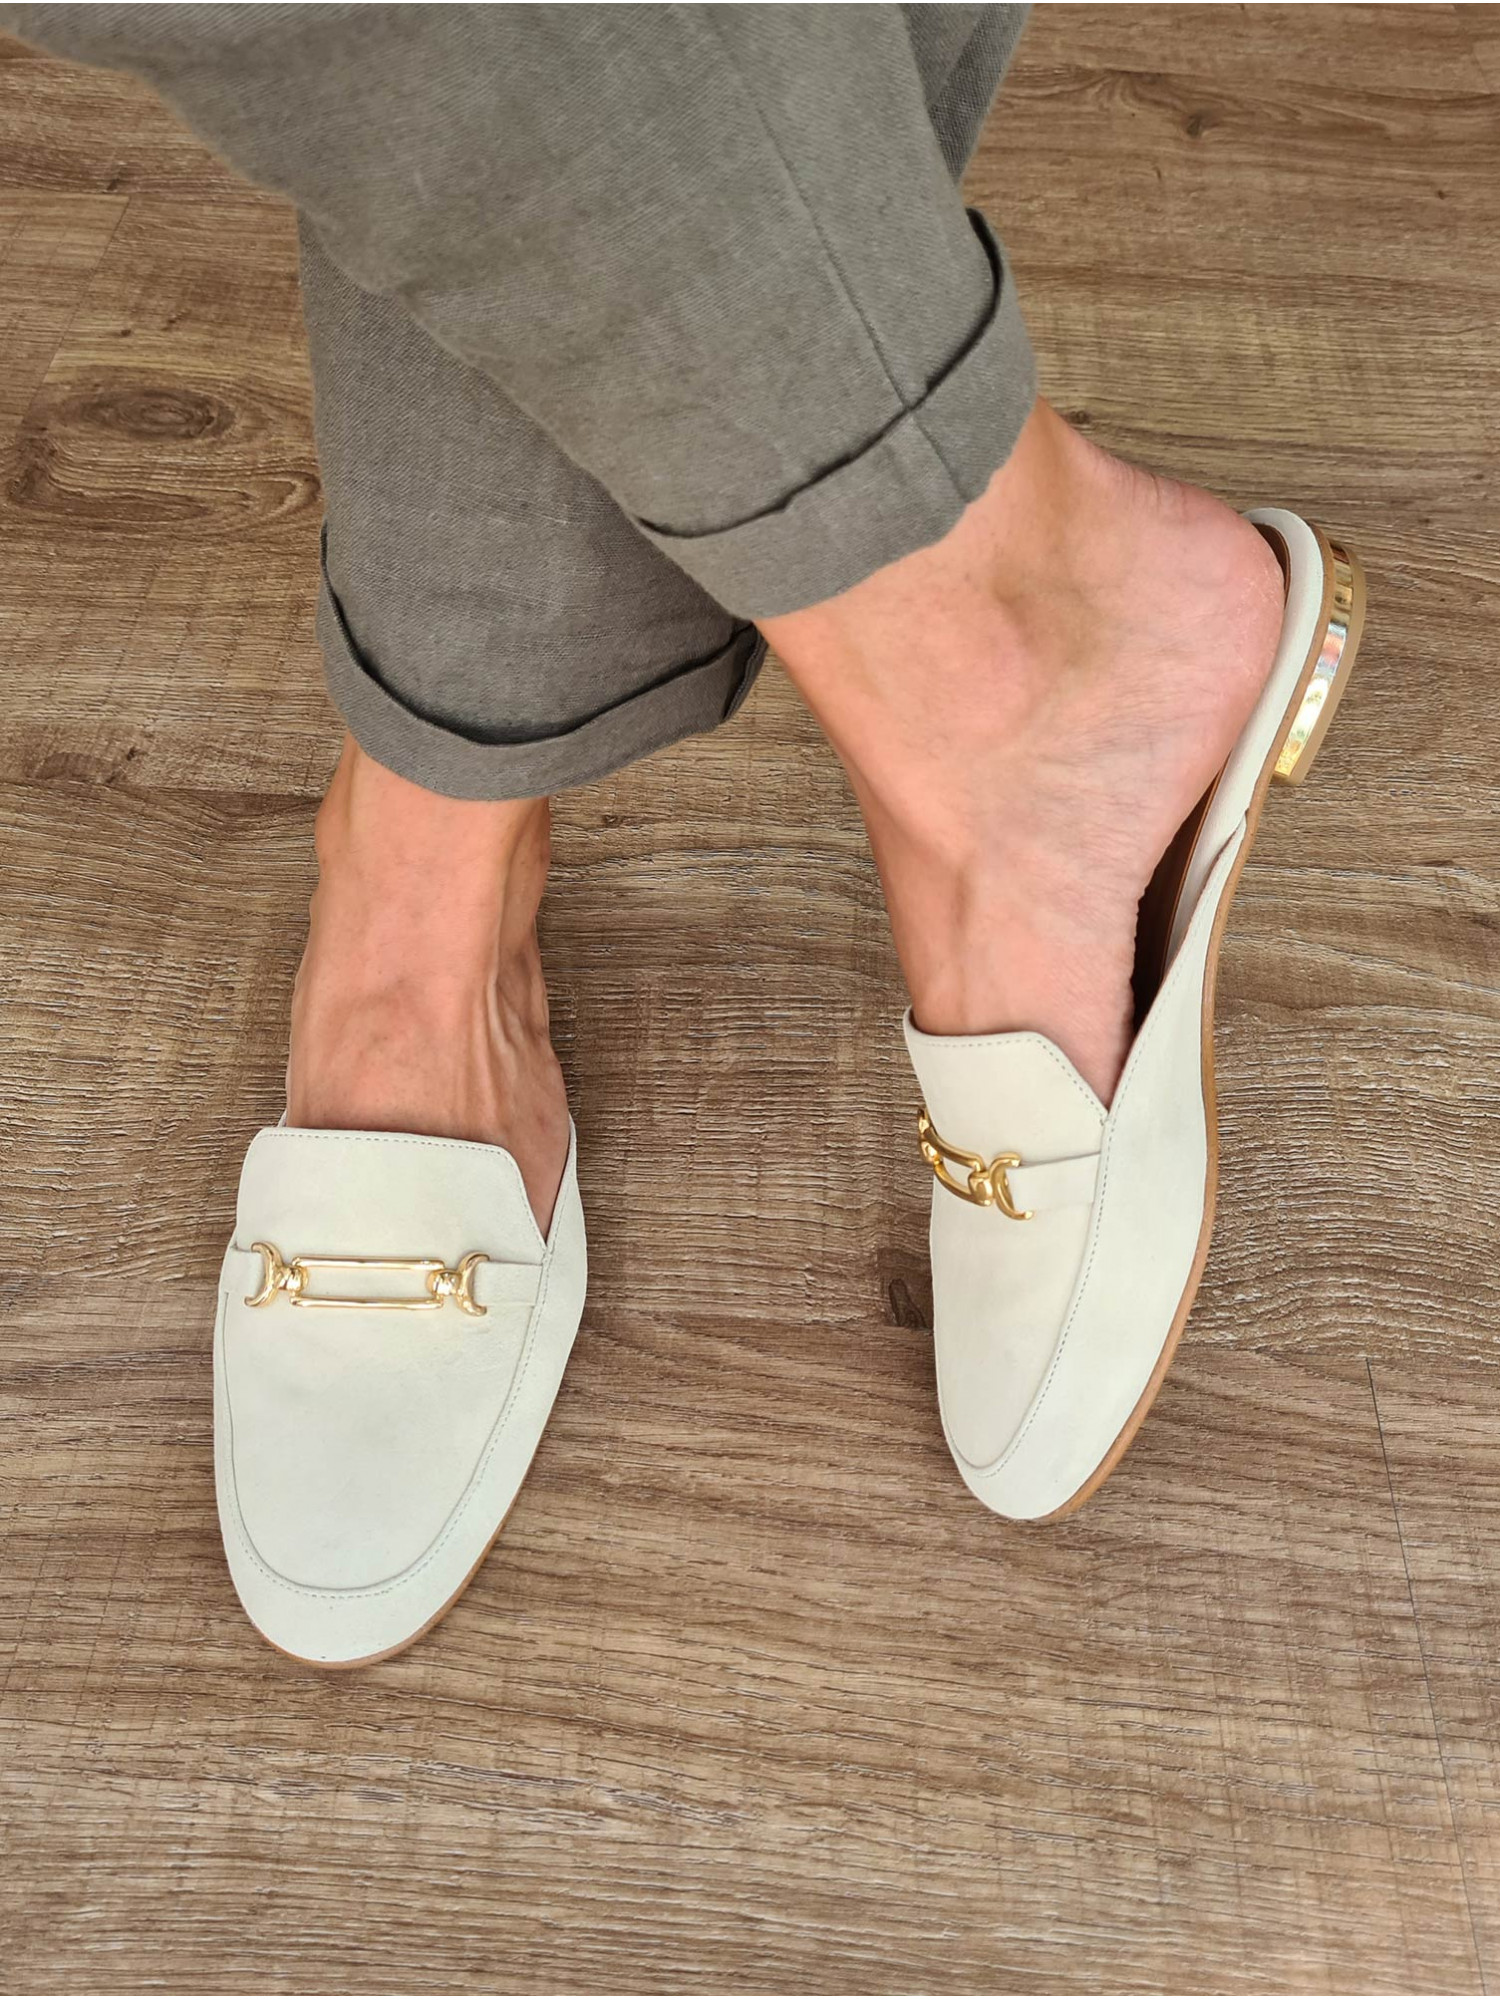 Zapato mocasín plano destalonado. Fabricado en España en piel de ante color beige y detalle de cadena dorada.